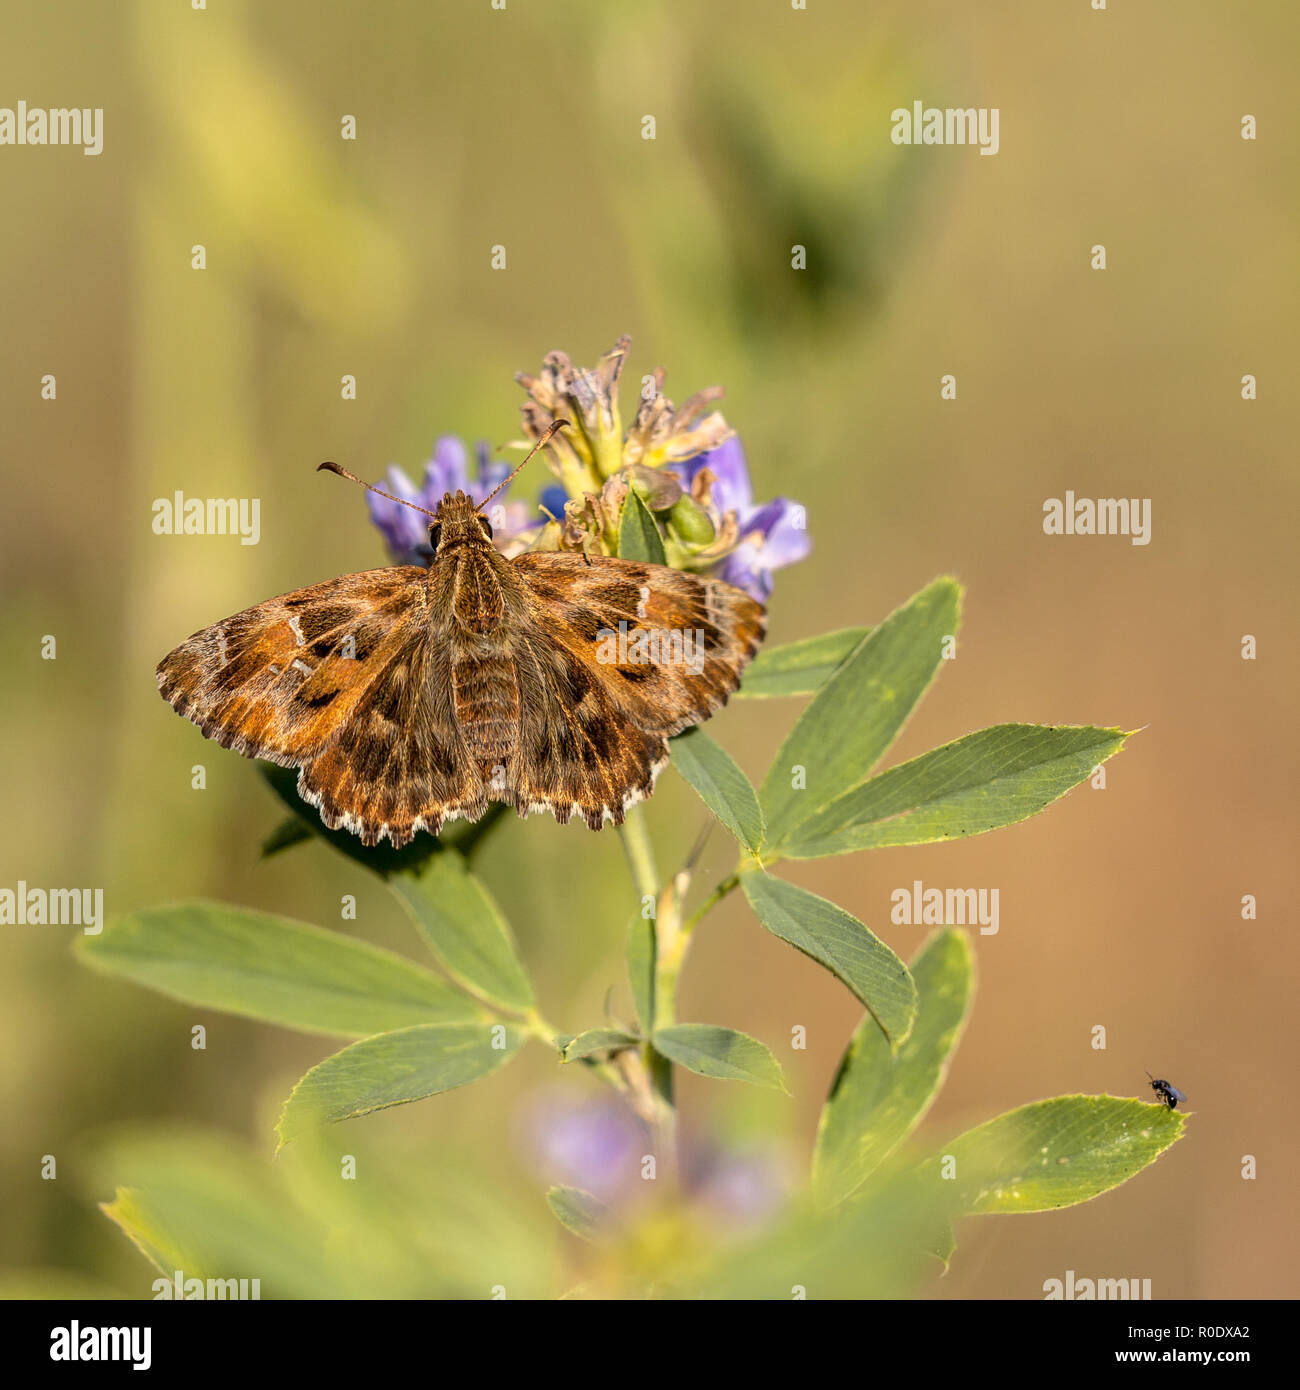 La Malva Skipper (Carcharodus alceae) è una farfalla della famiglia Hesperiidae. Essa si trova nel sud e nel centro Europa, del nord Africa e in Foto Stock